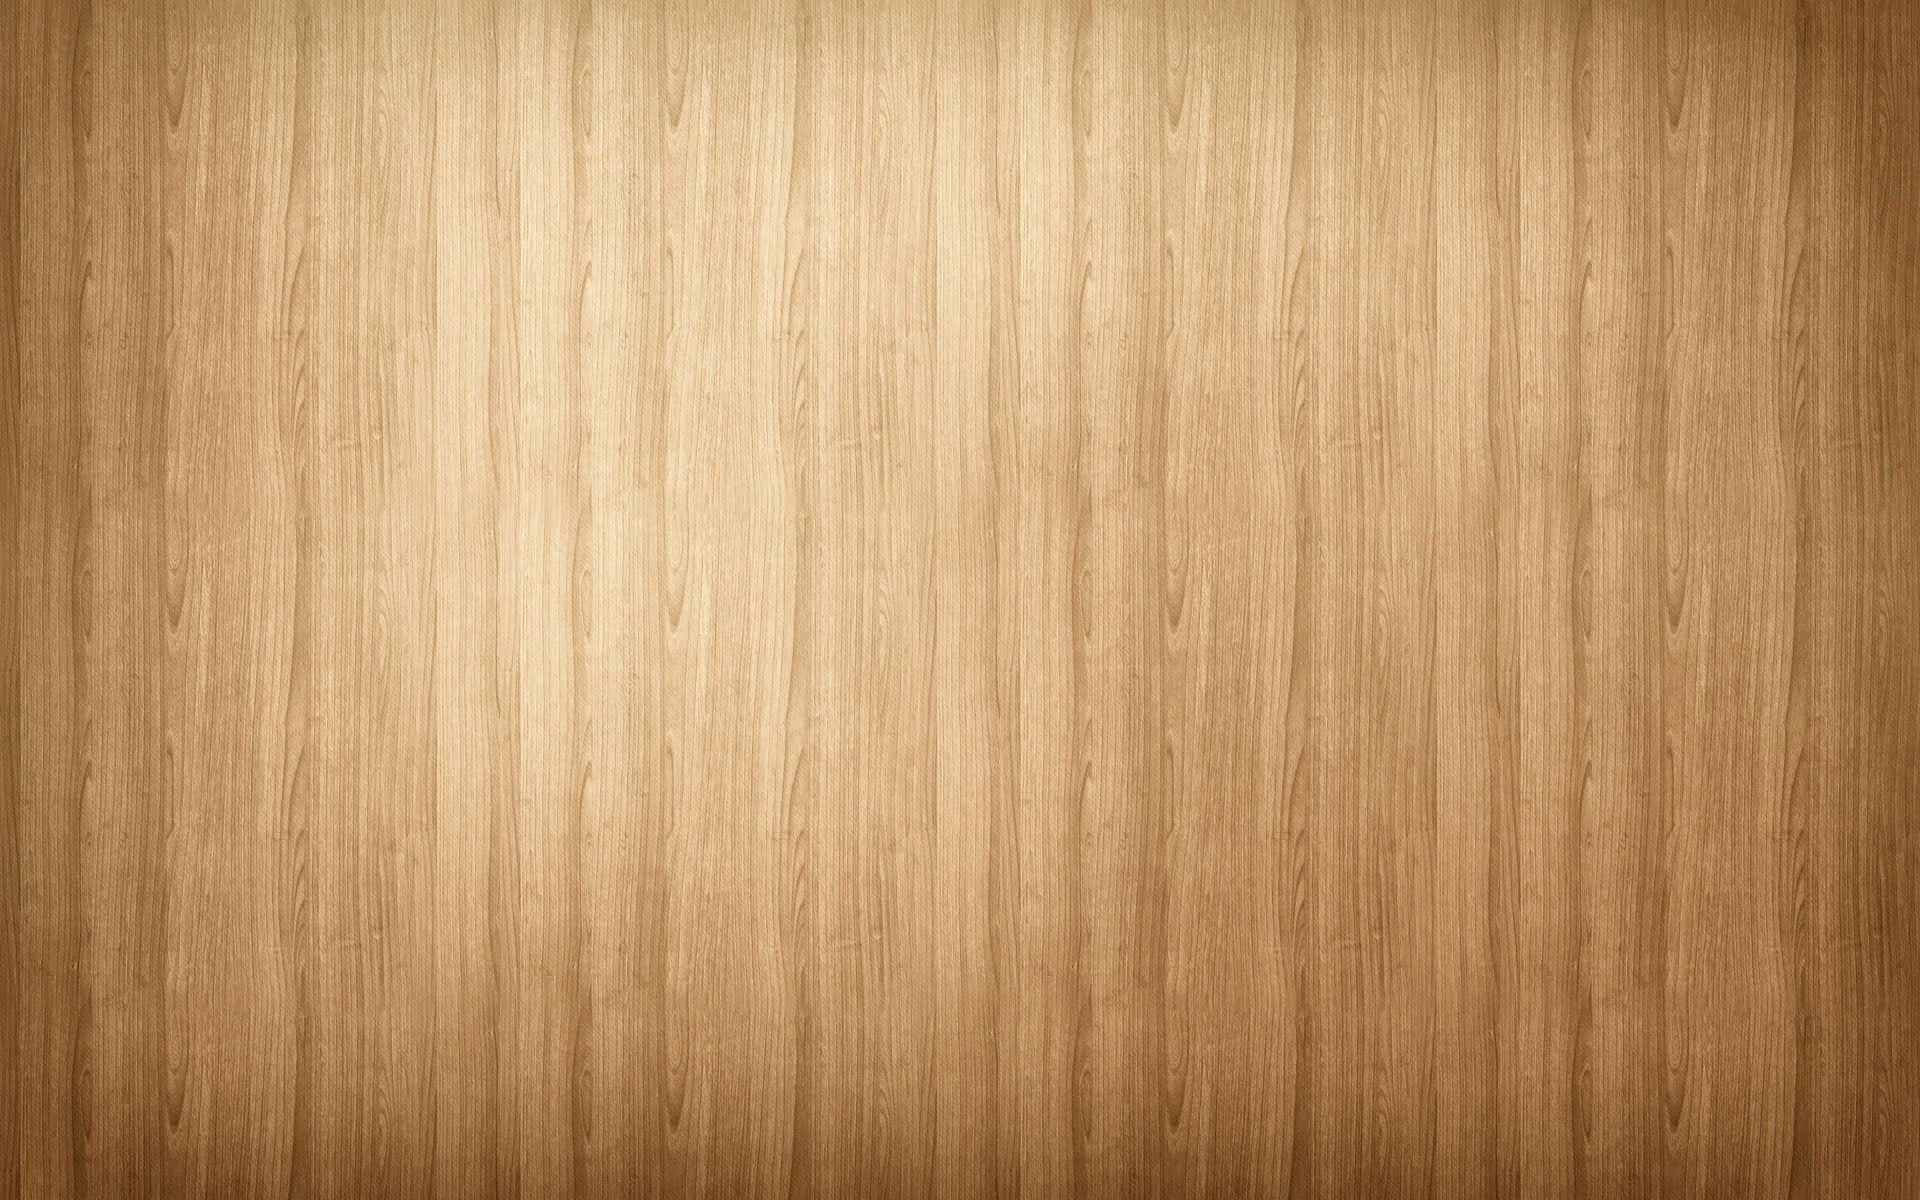 Glattepaneele Holz Hintergrund Textur